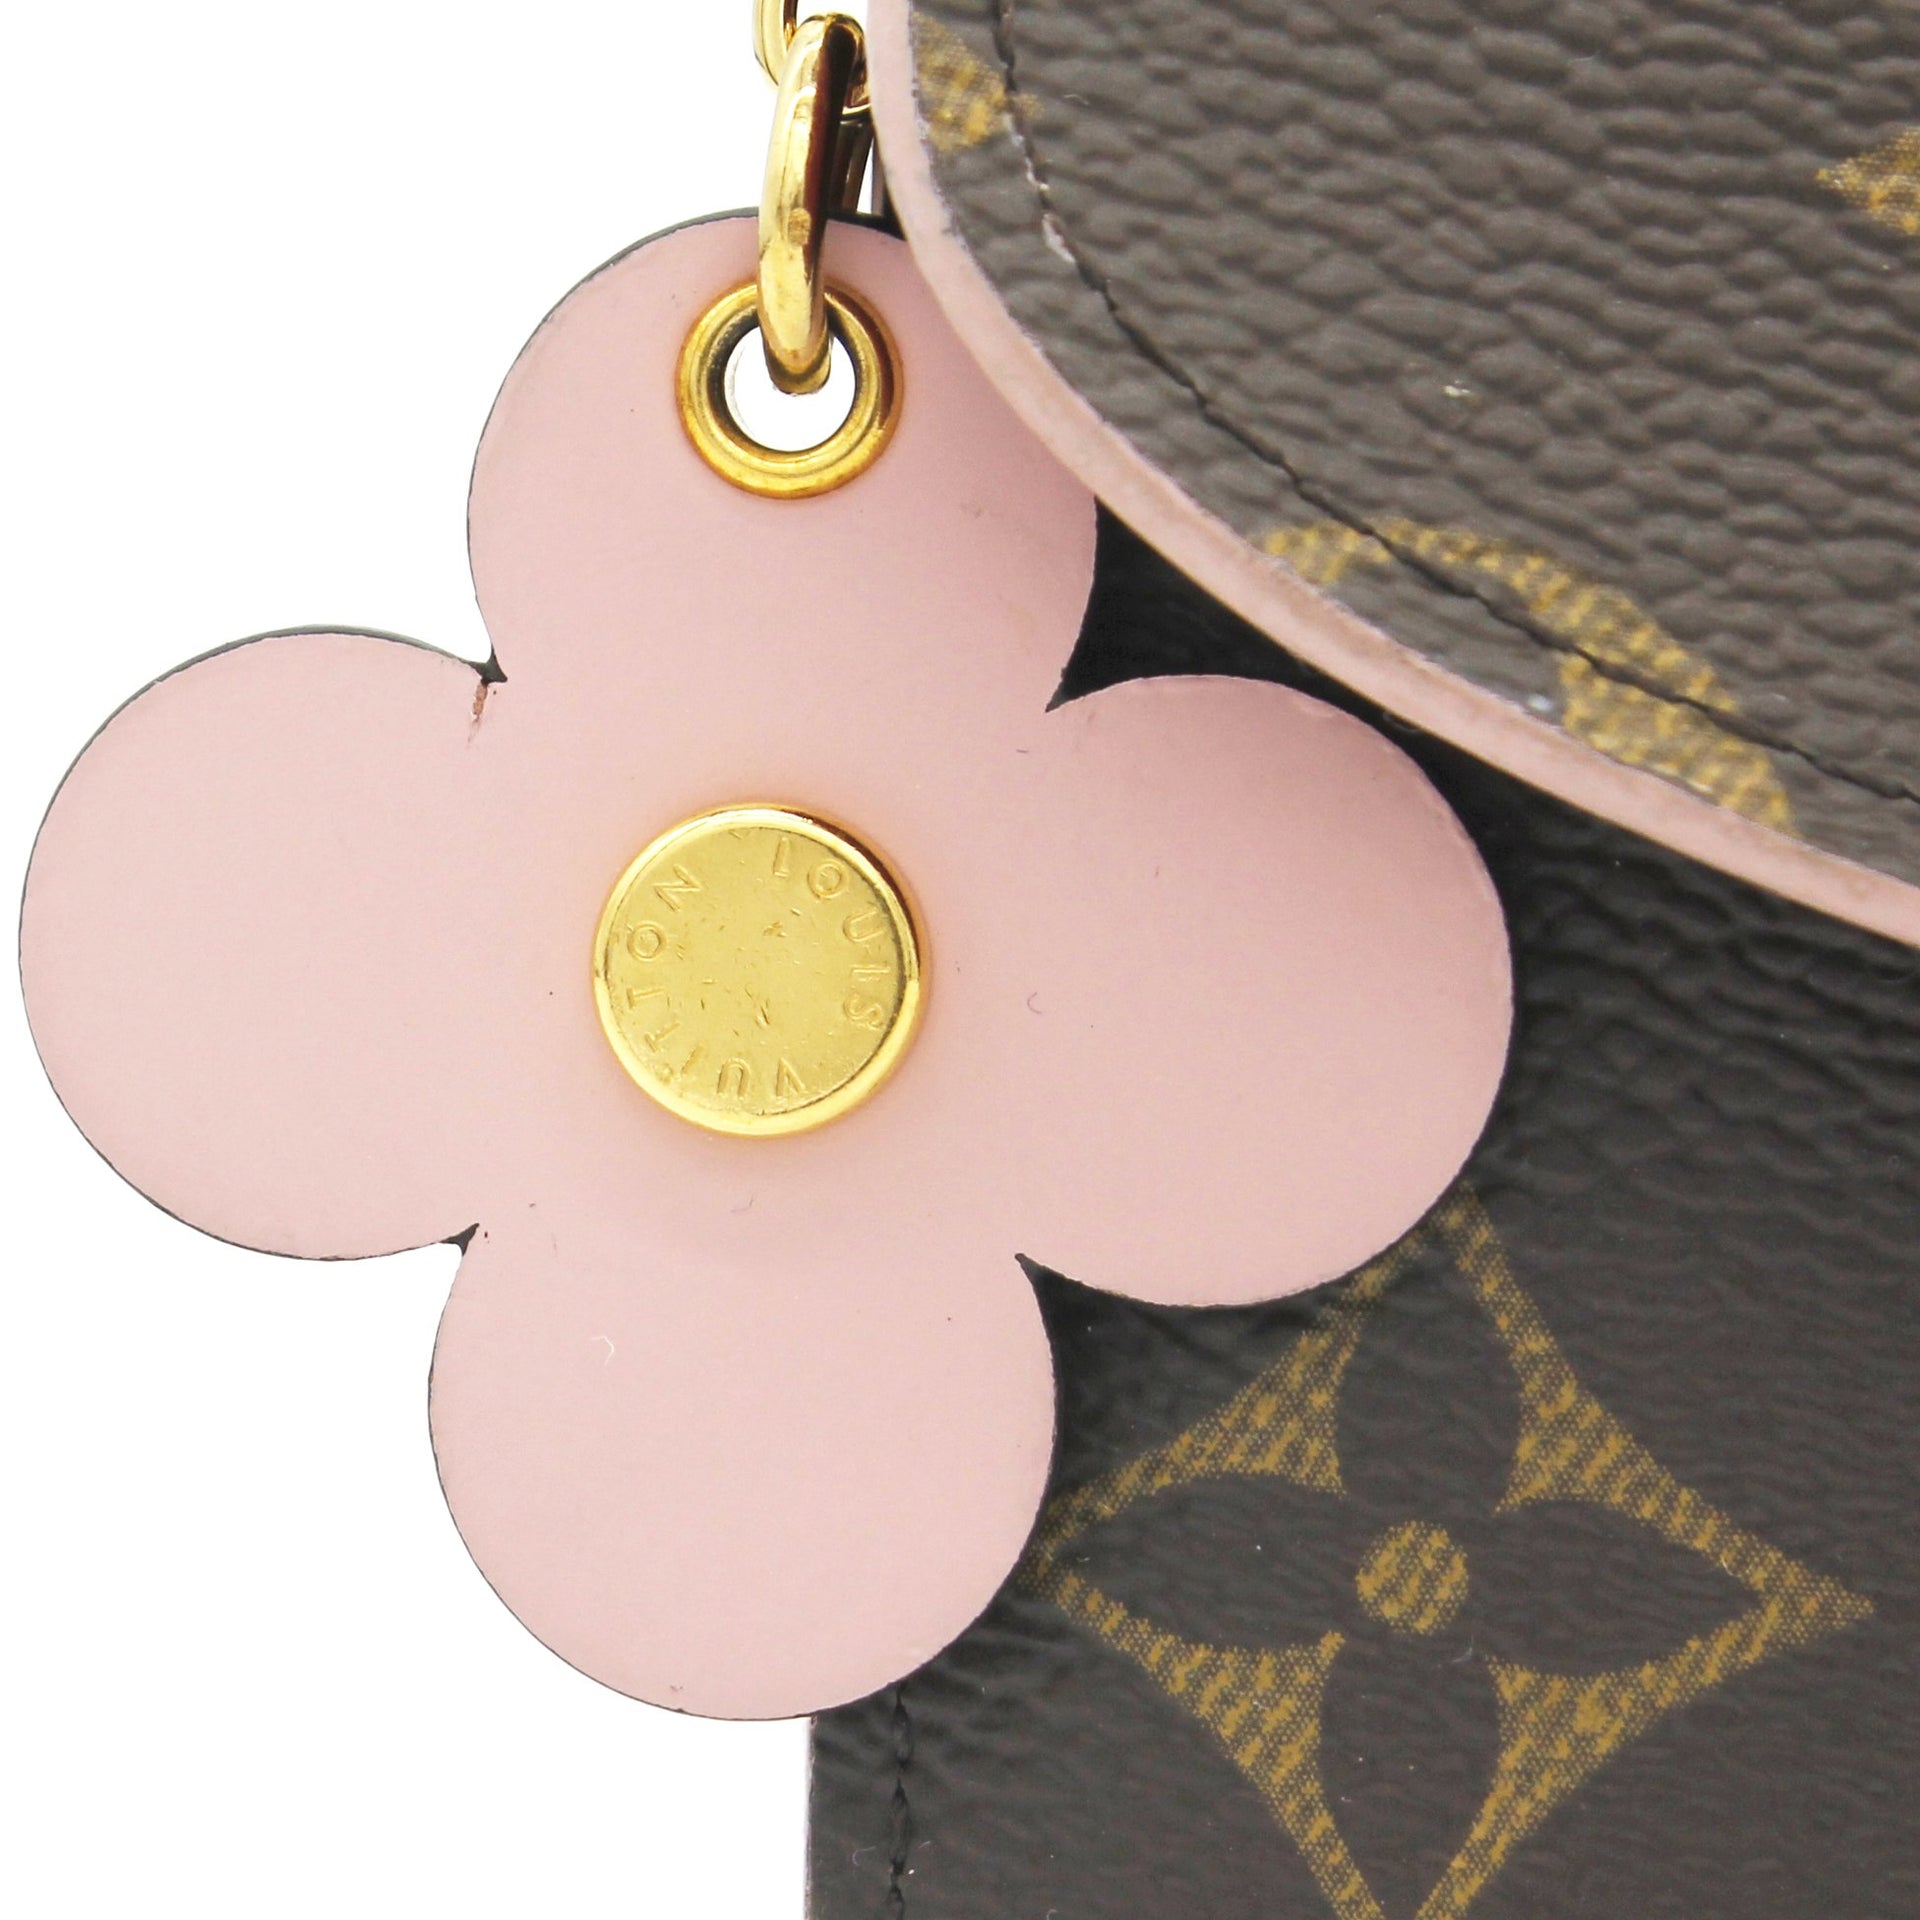 Louis Vuitton Monogram Bloom Flower Emilie Wallet Fuchsia